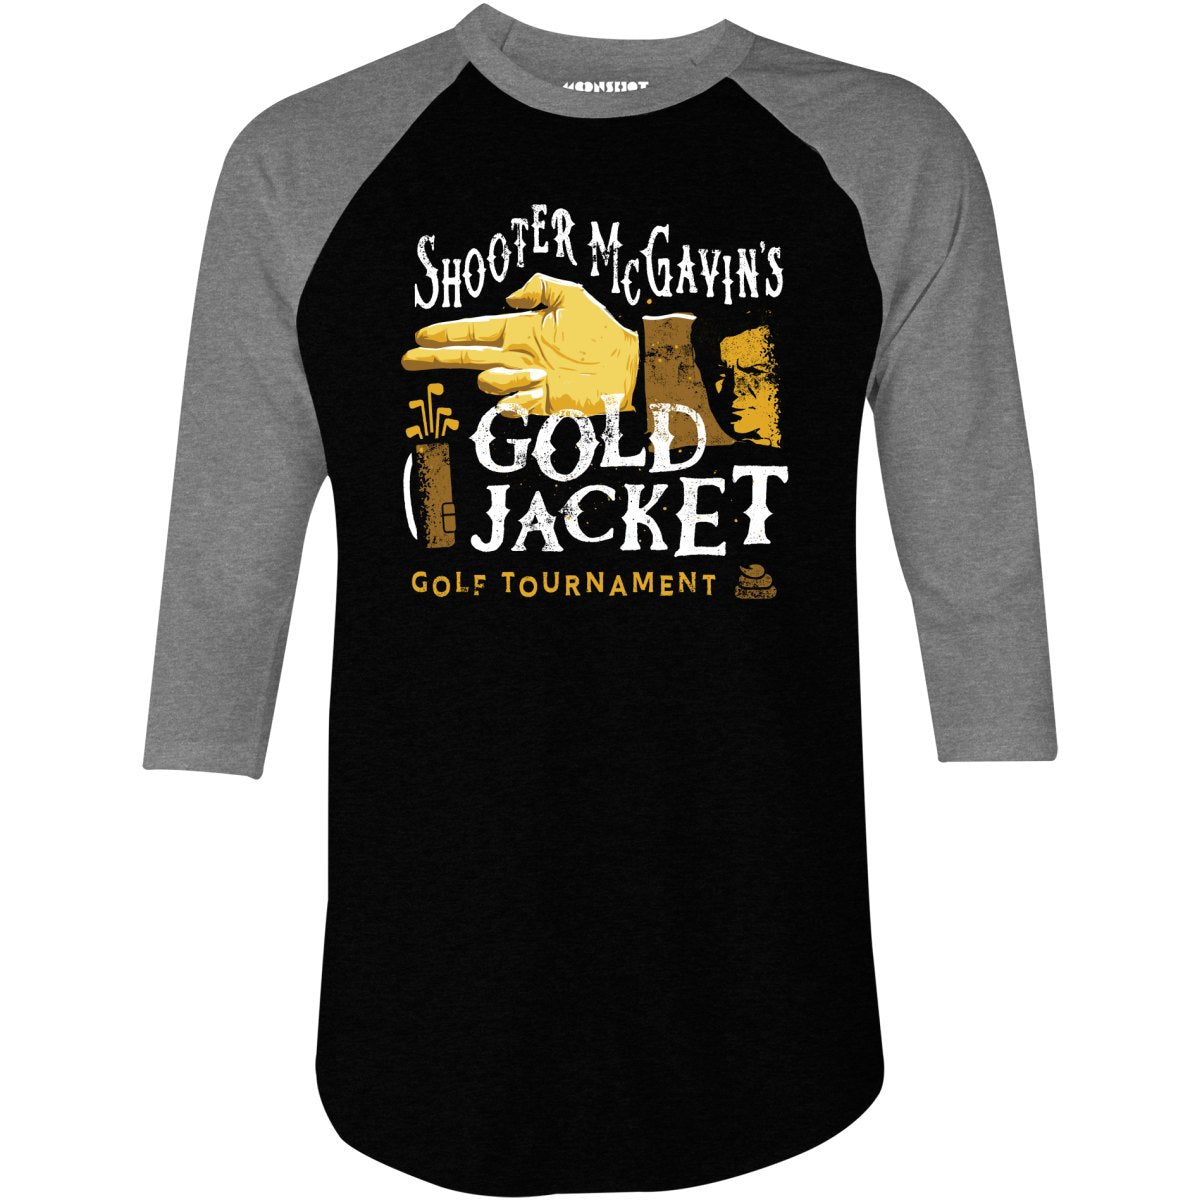 Shooter McGavin's Gold Jacket Golf Tournament - 3/4 Sleeve Raglan T-Shirt